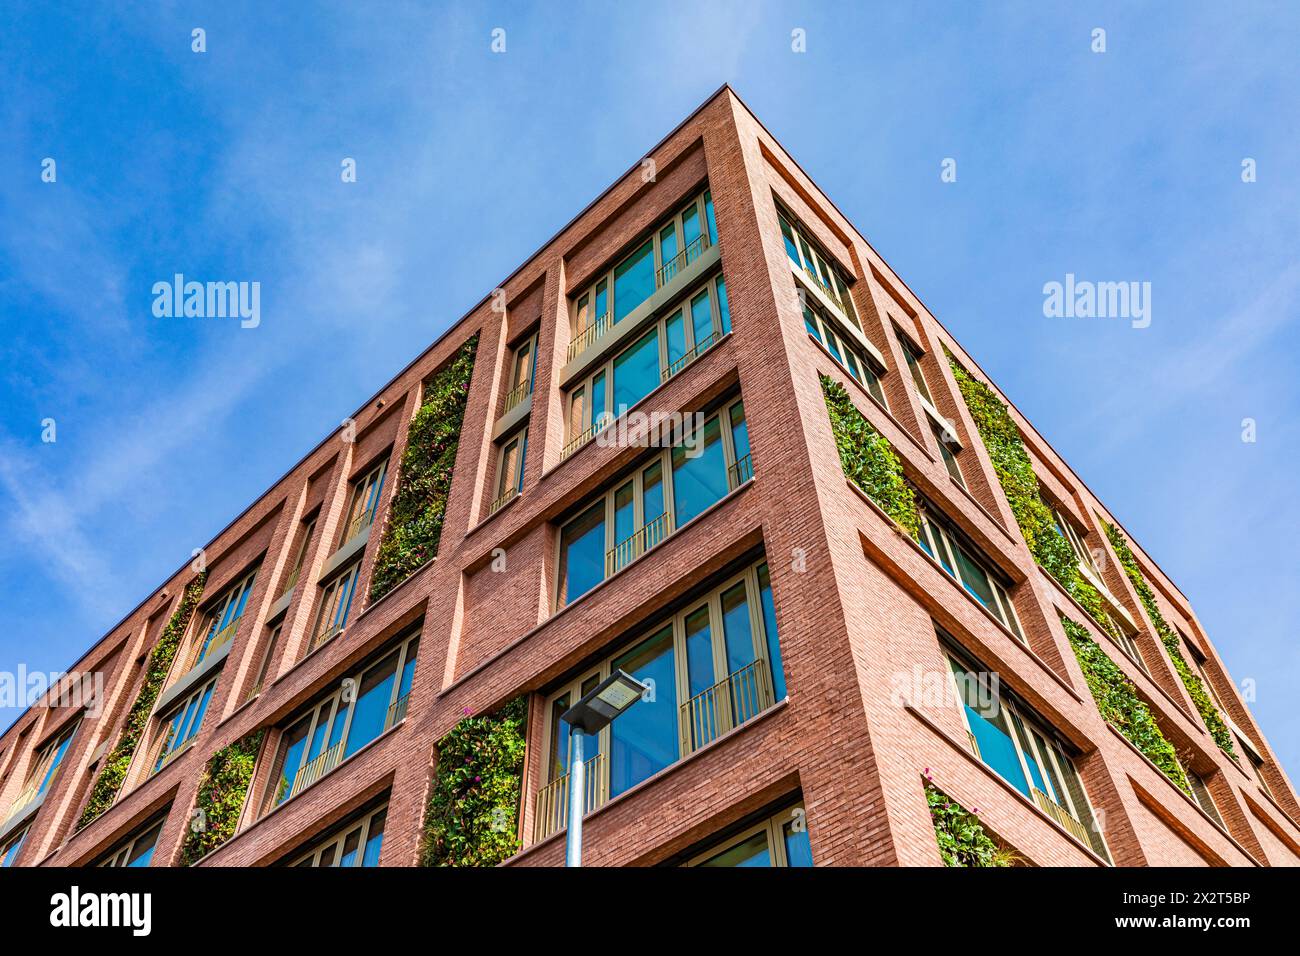 Allemagne, Bade-Wurtemberg, Stuttgart, immeuble de bureaux avec façade verdoyante Banque D'Images